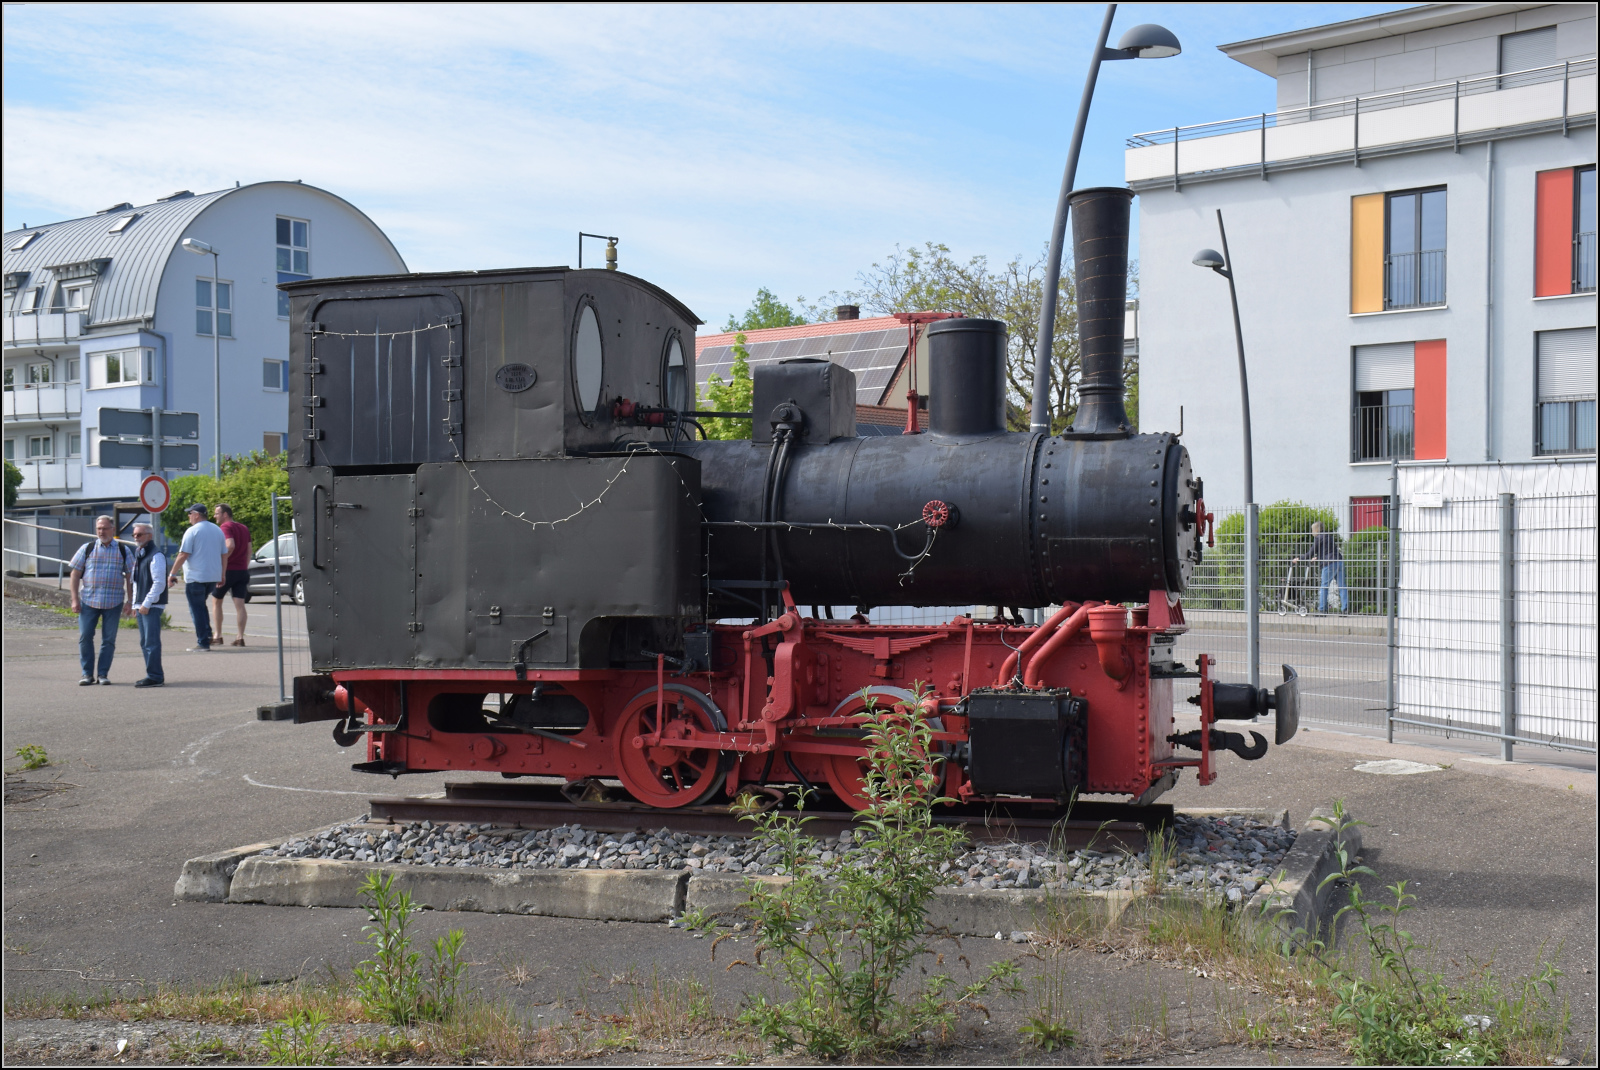 175 Jahre Eisenbahn in Nördlingen / 55 Jahre Bayrisches Eisenbahnmuseum.

Die 700 mm-Schmalspurlok 4273 aus dem Jahr 1924 von Maffei wird auf dem Gelände auf der Seite des Empfangsgebäudes ausgestellt. Mai 2024.